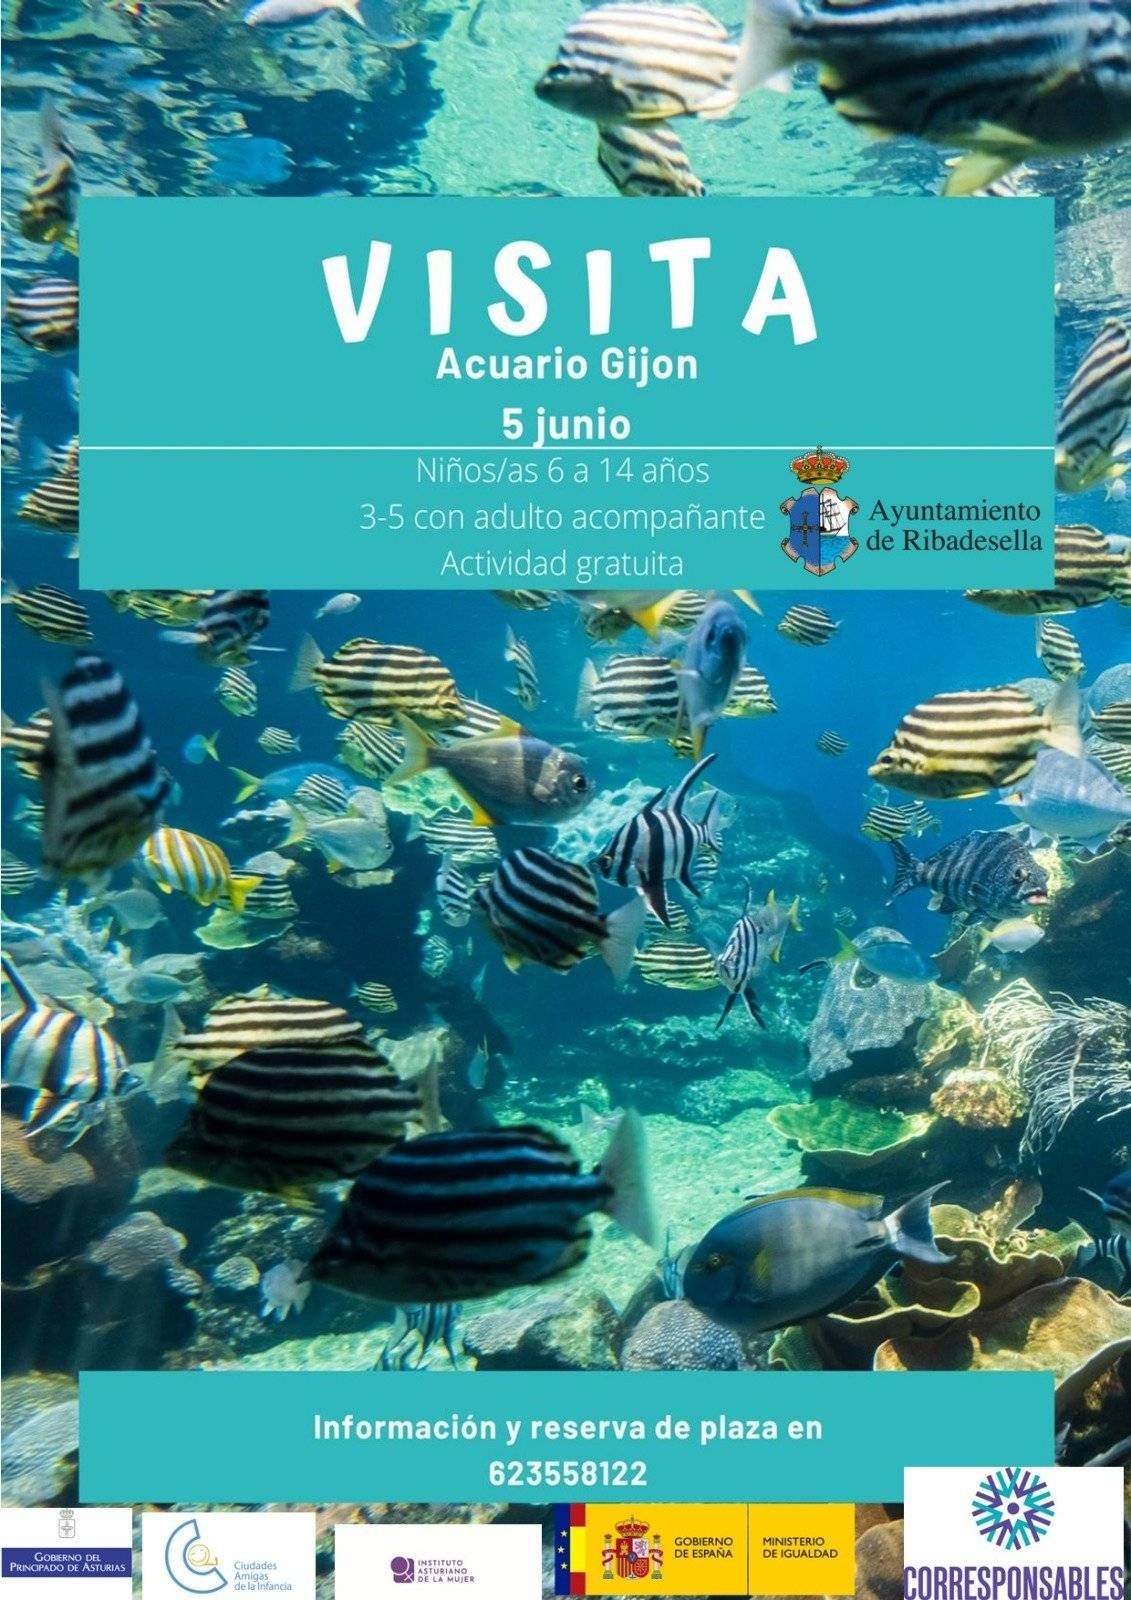 Excursión al acuario de Gijón (junio 2022) - Ribadesella (Asturias)